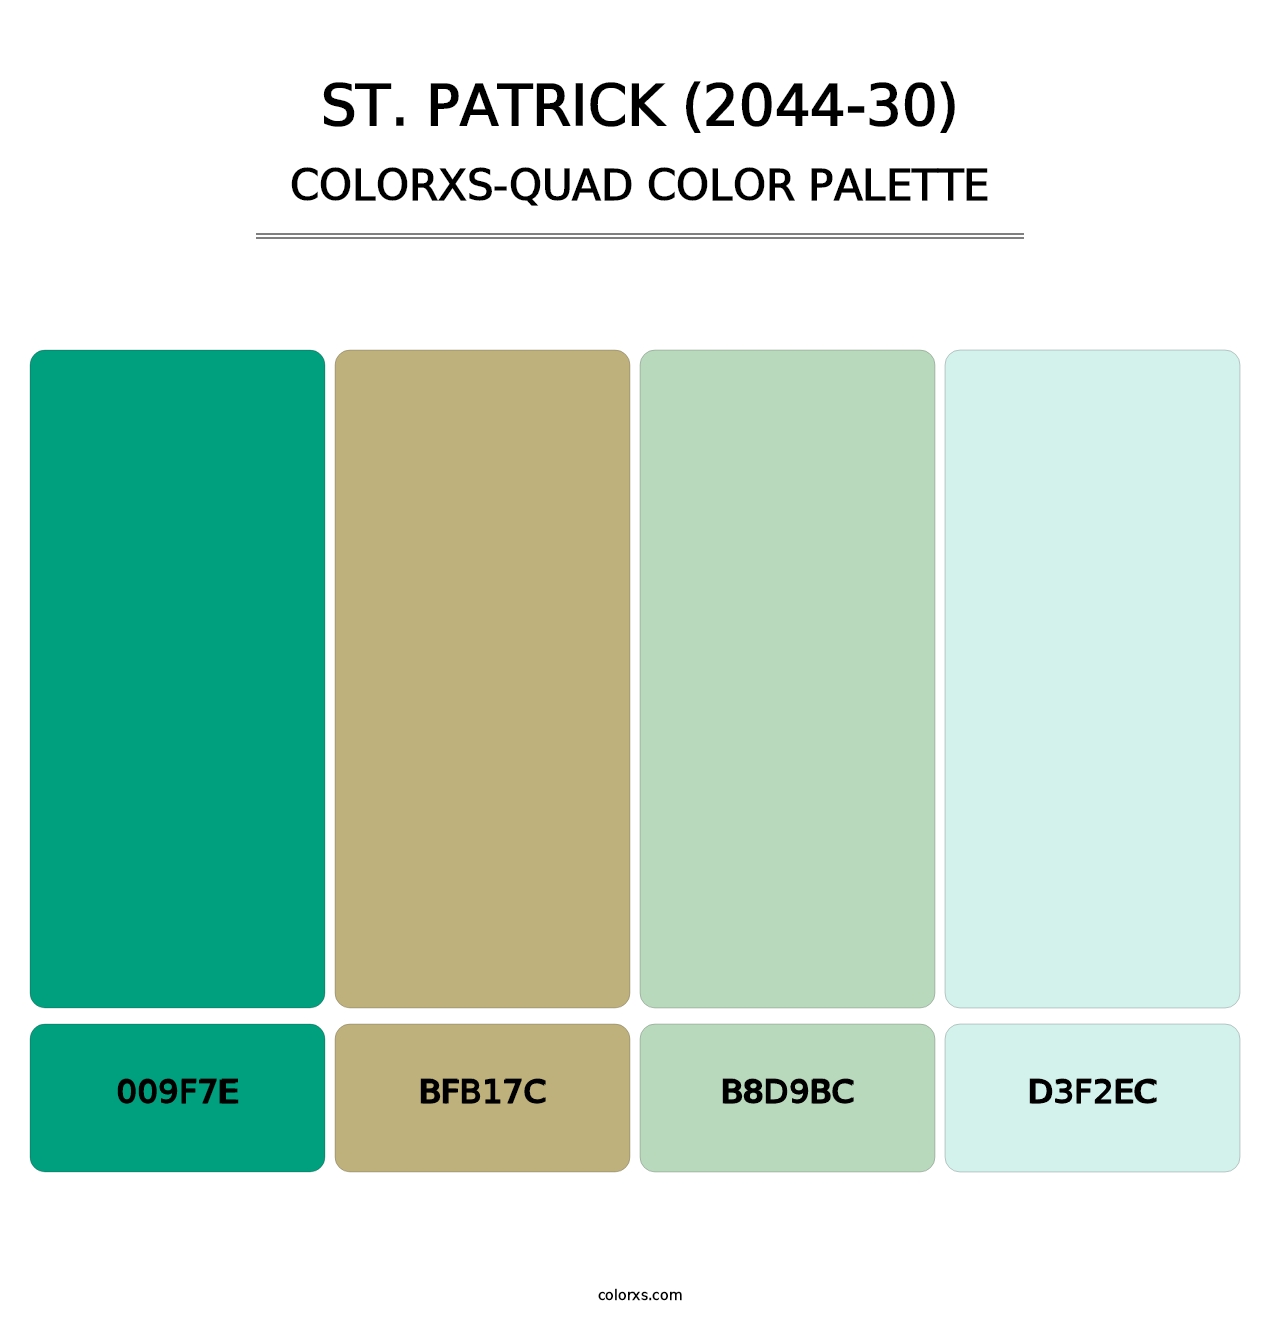 St. Patrick (2044-30) - Colorxs Quad Palette